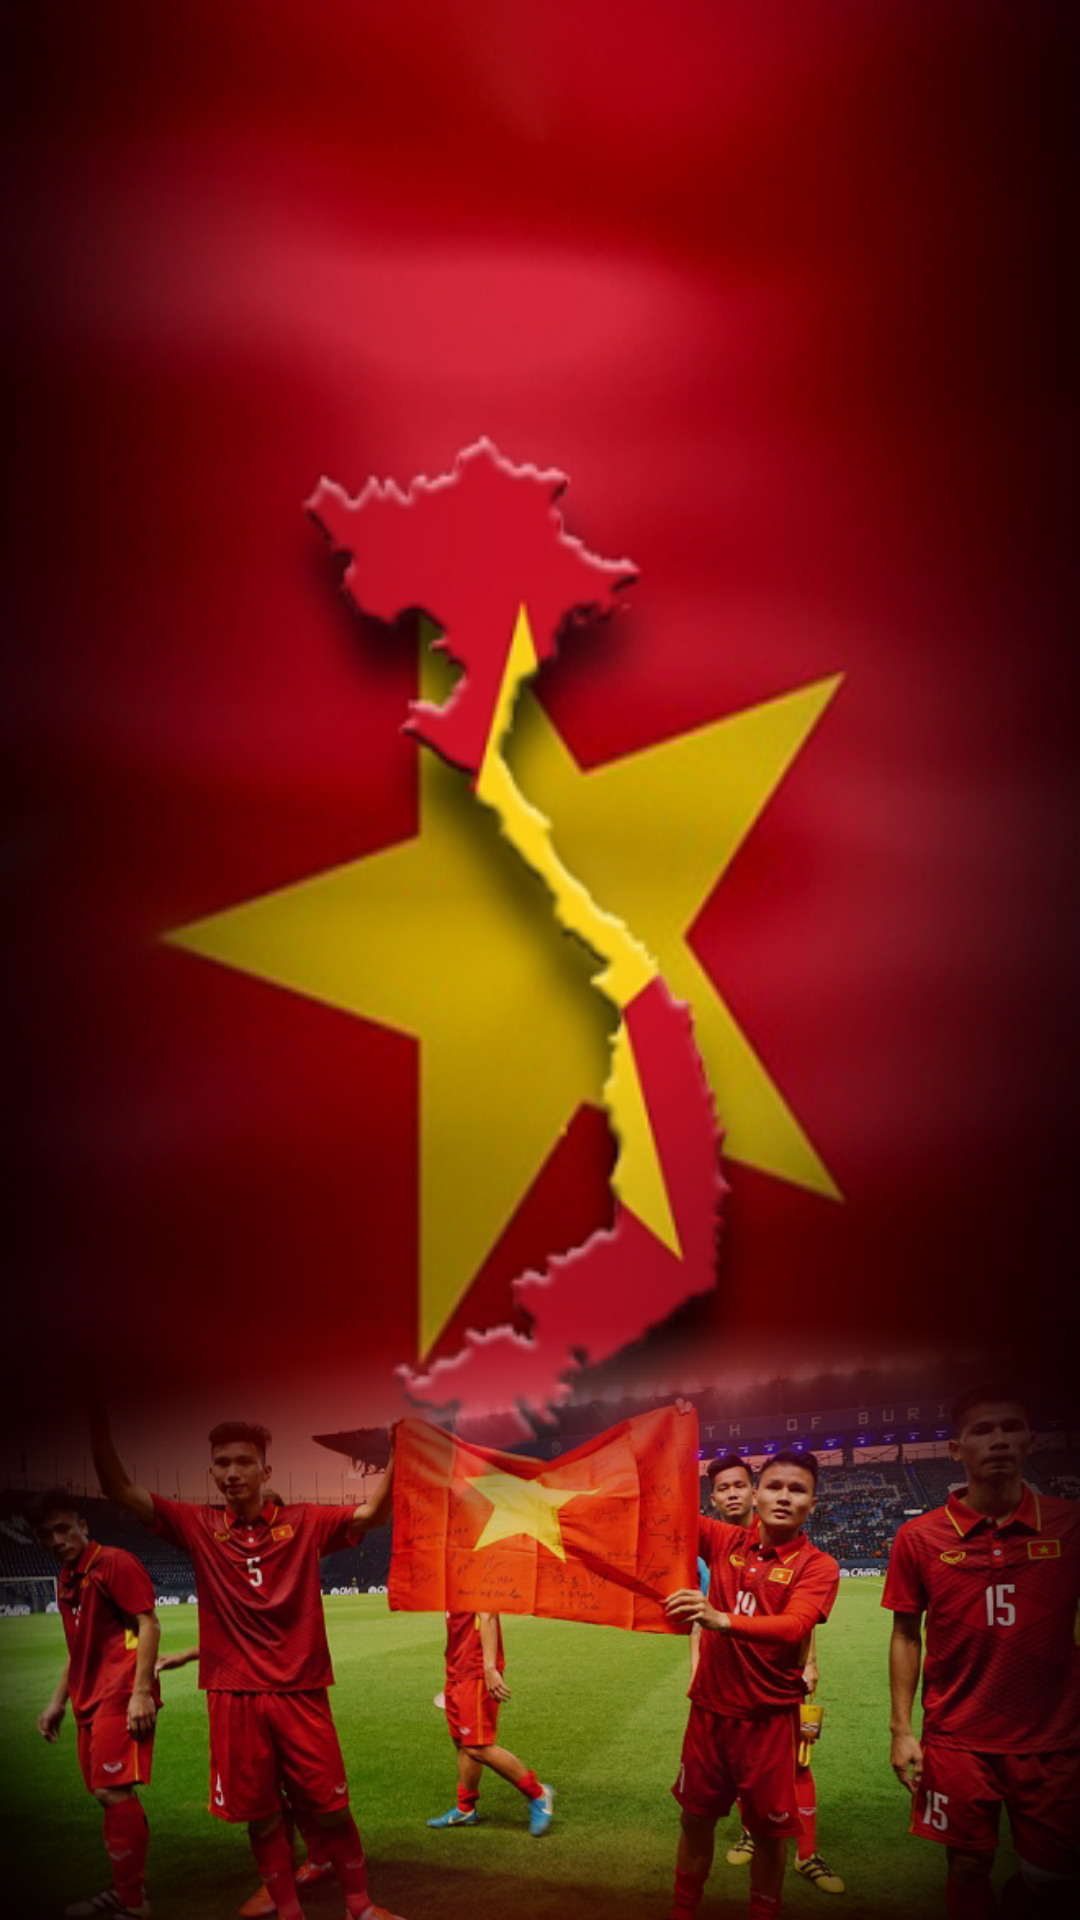 Cờ Việt Nam: Cờ Việt Nam với sắc đỏ sao vàng luôn đem lại niềm tự hào cho toàn thể người Việt Nam. Hãy thưởng thức những hình ảnh đầy cảm xúc về cờ đất nước và sự gắn bó với quê hương của chúng ta.